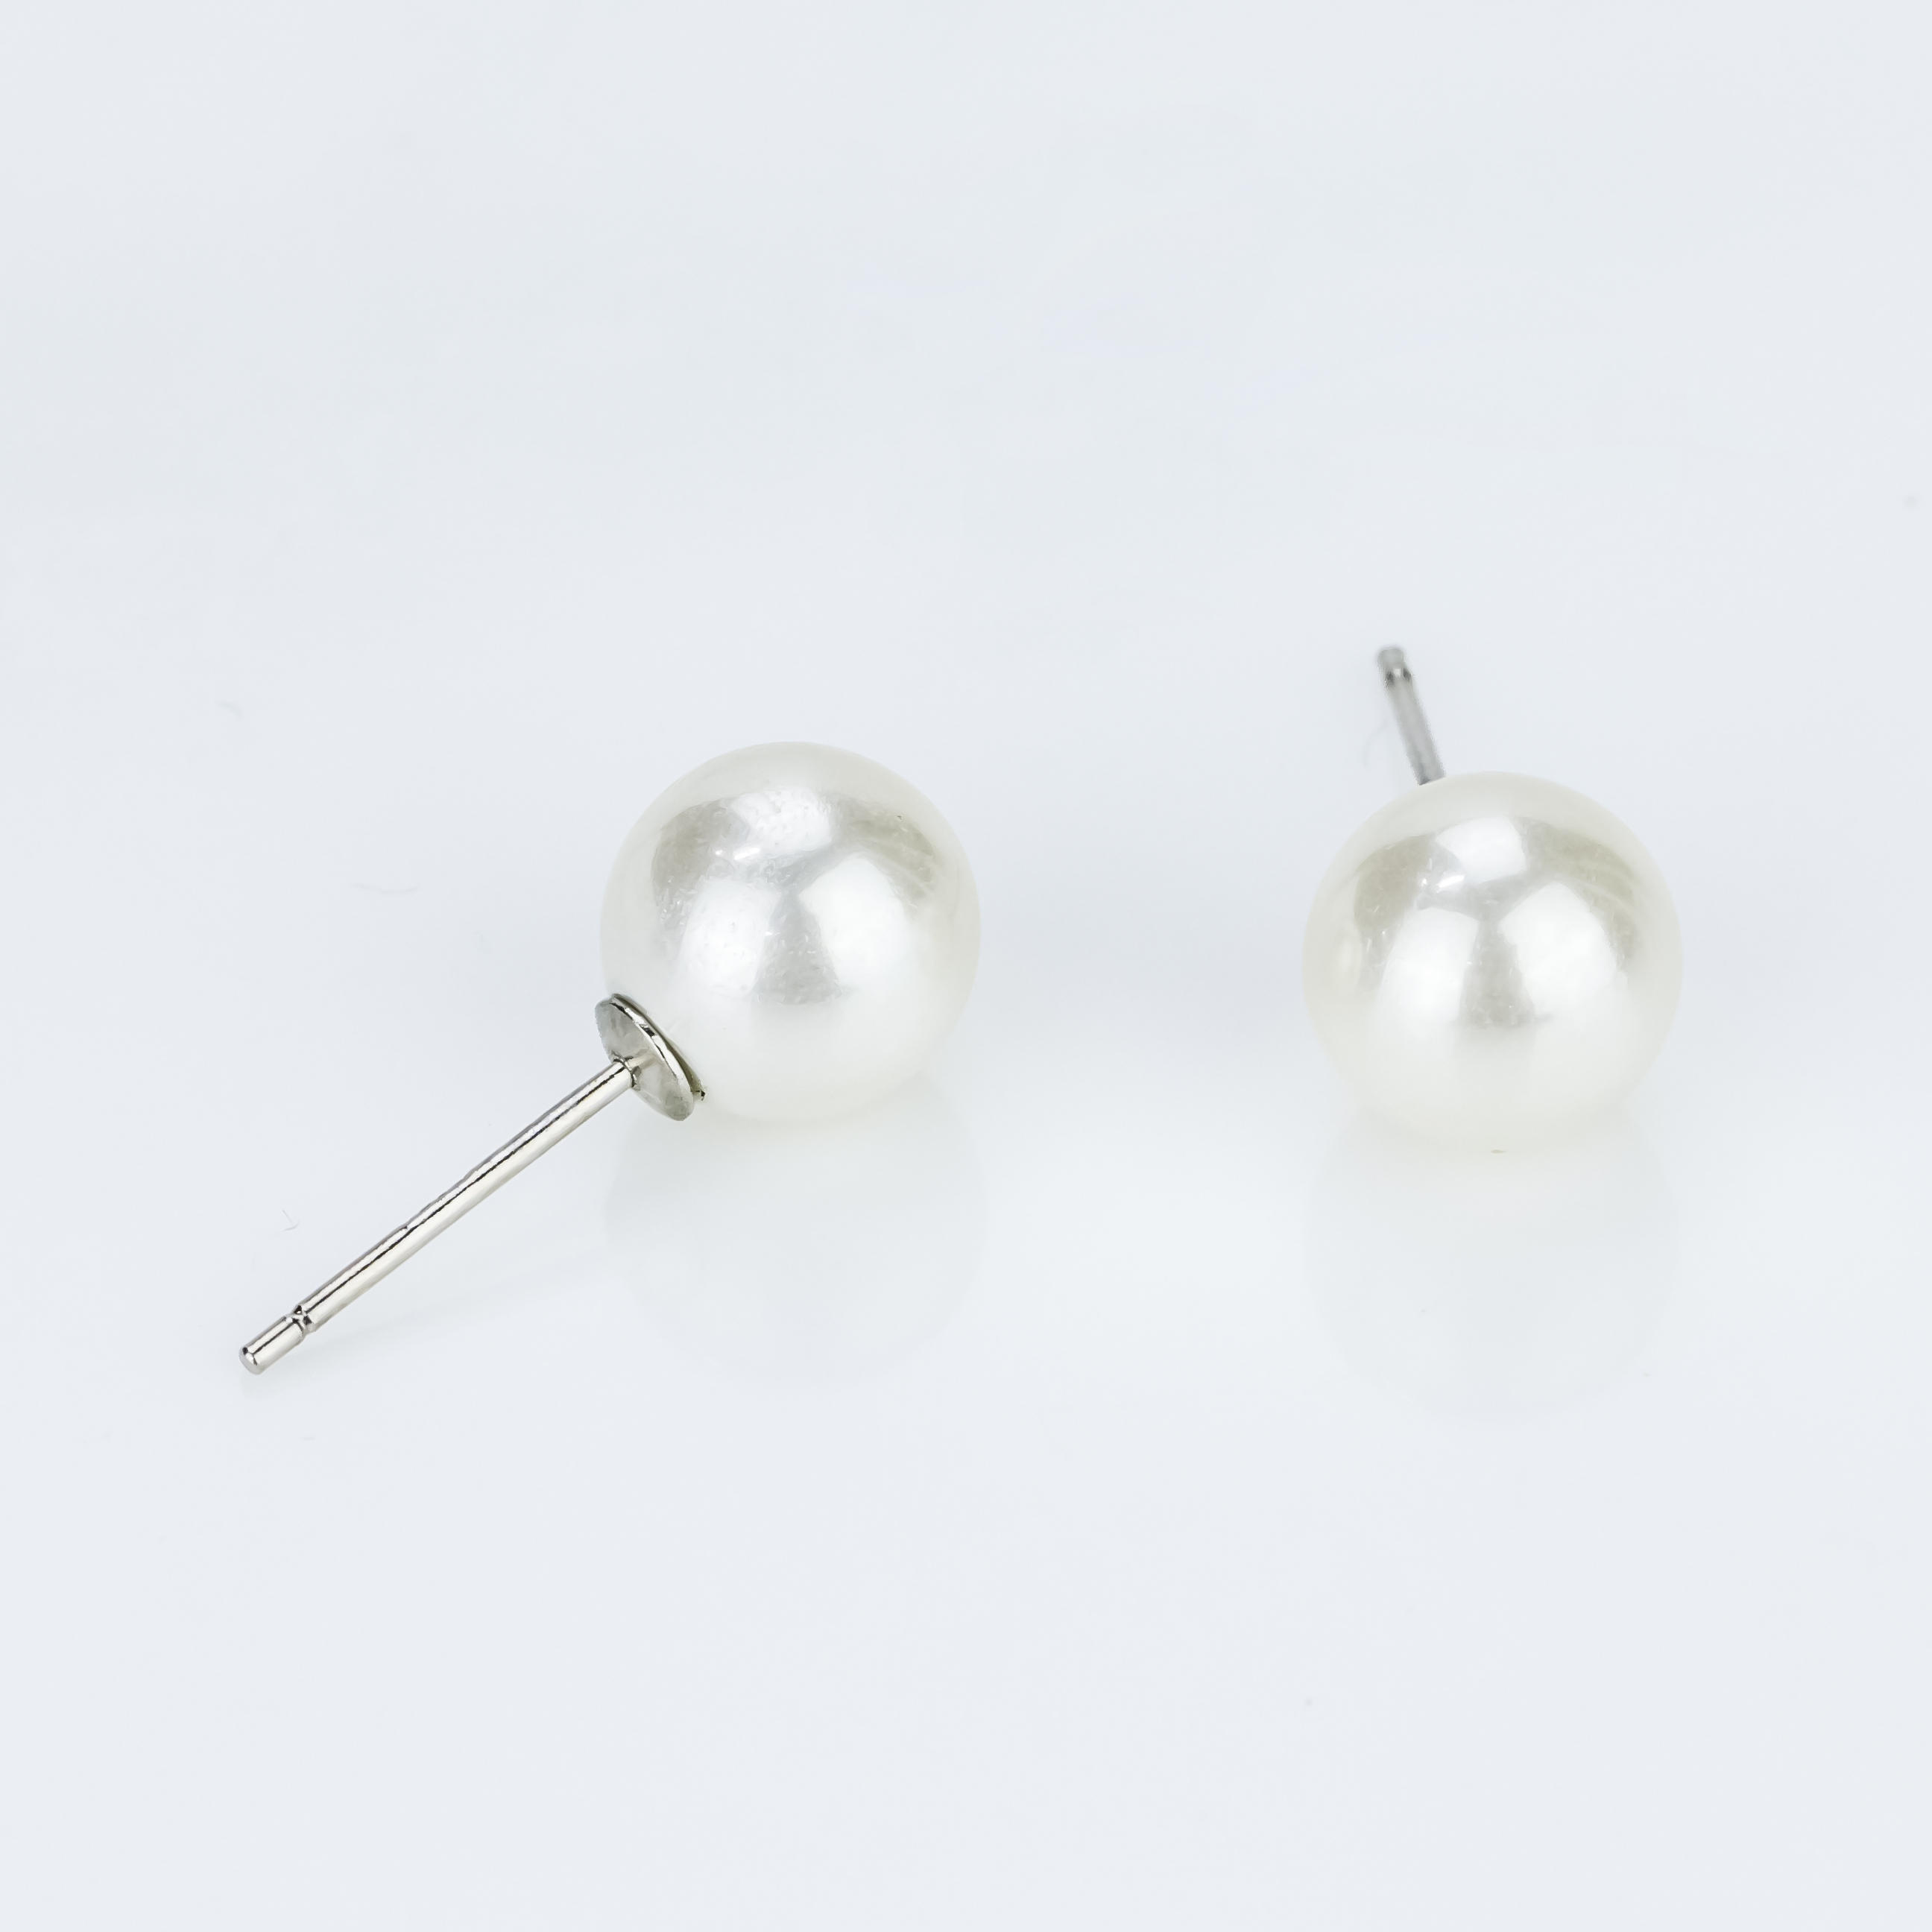 925 sterling silver earring